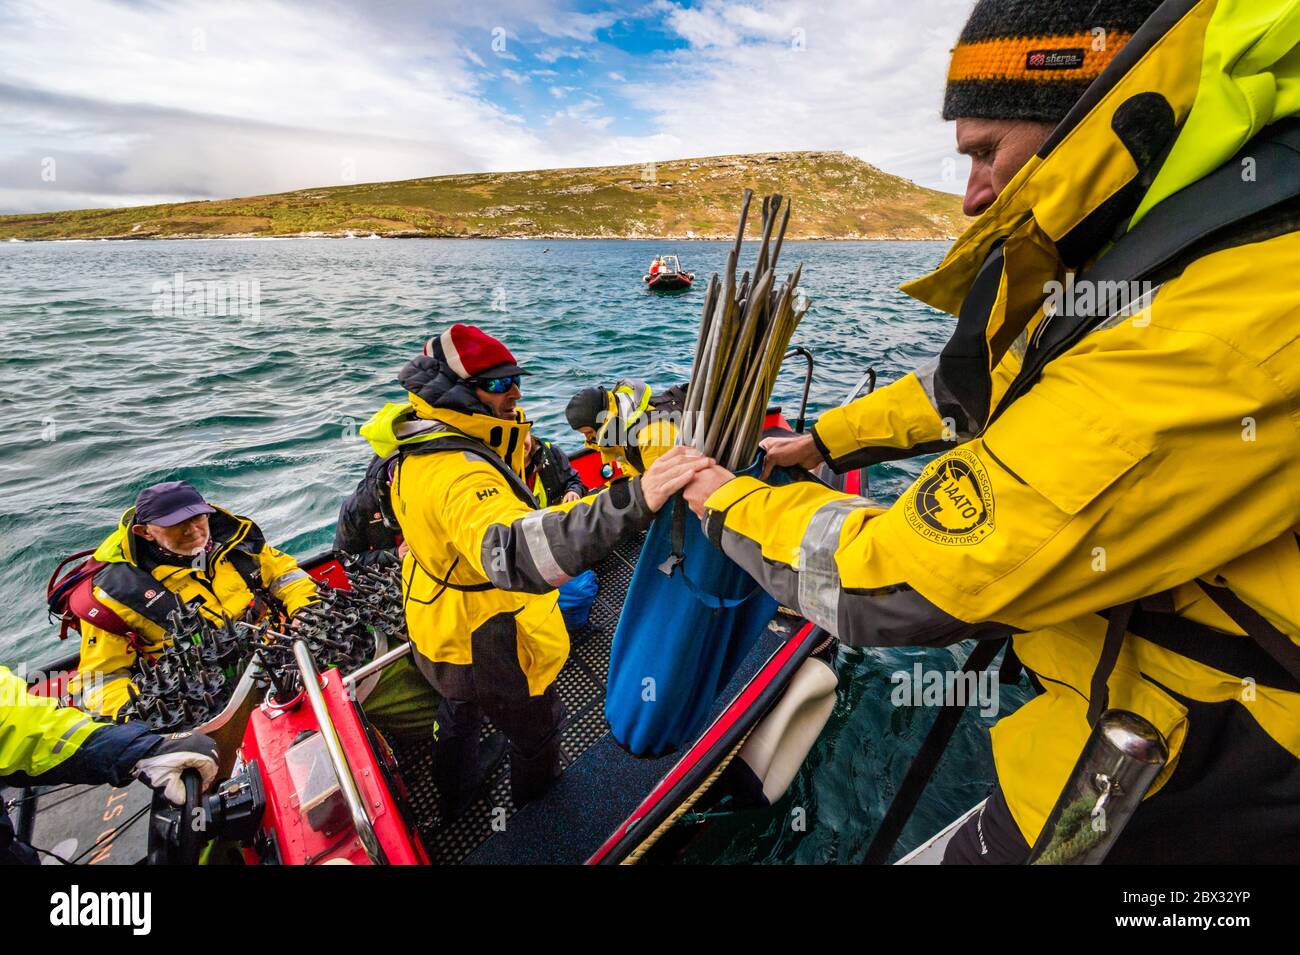 Îles Falkland, West point Island, l'équipe scientifique envoie des marqueurs de sentier pour éviter de perturber la faune locale et protéger la flore la plus fragile, avant la visite des voyageurs Banque D'Images